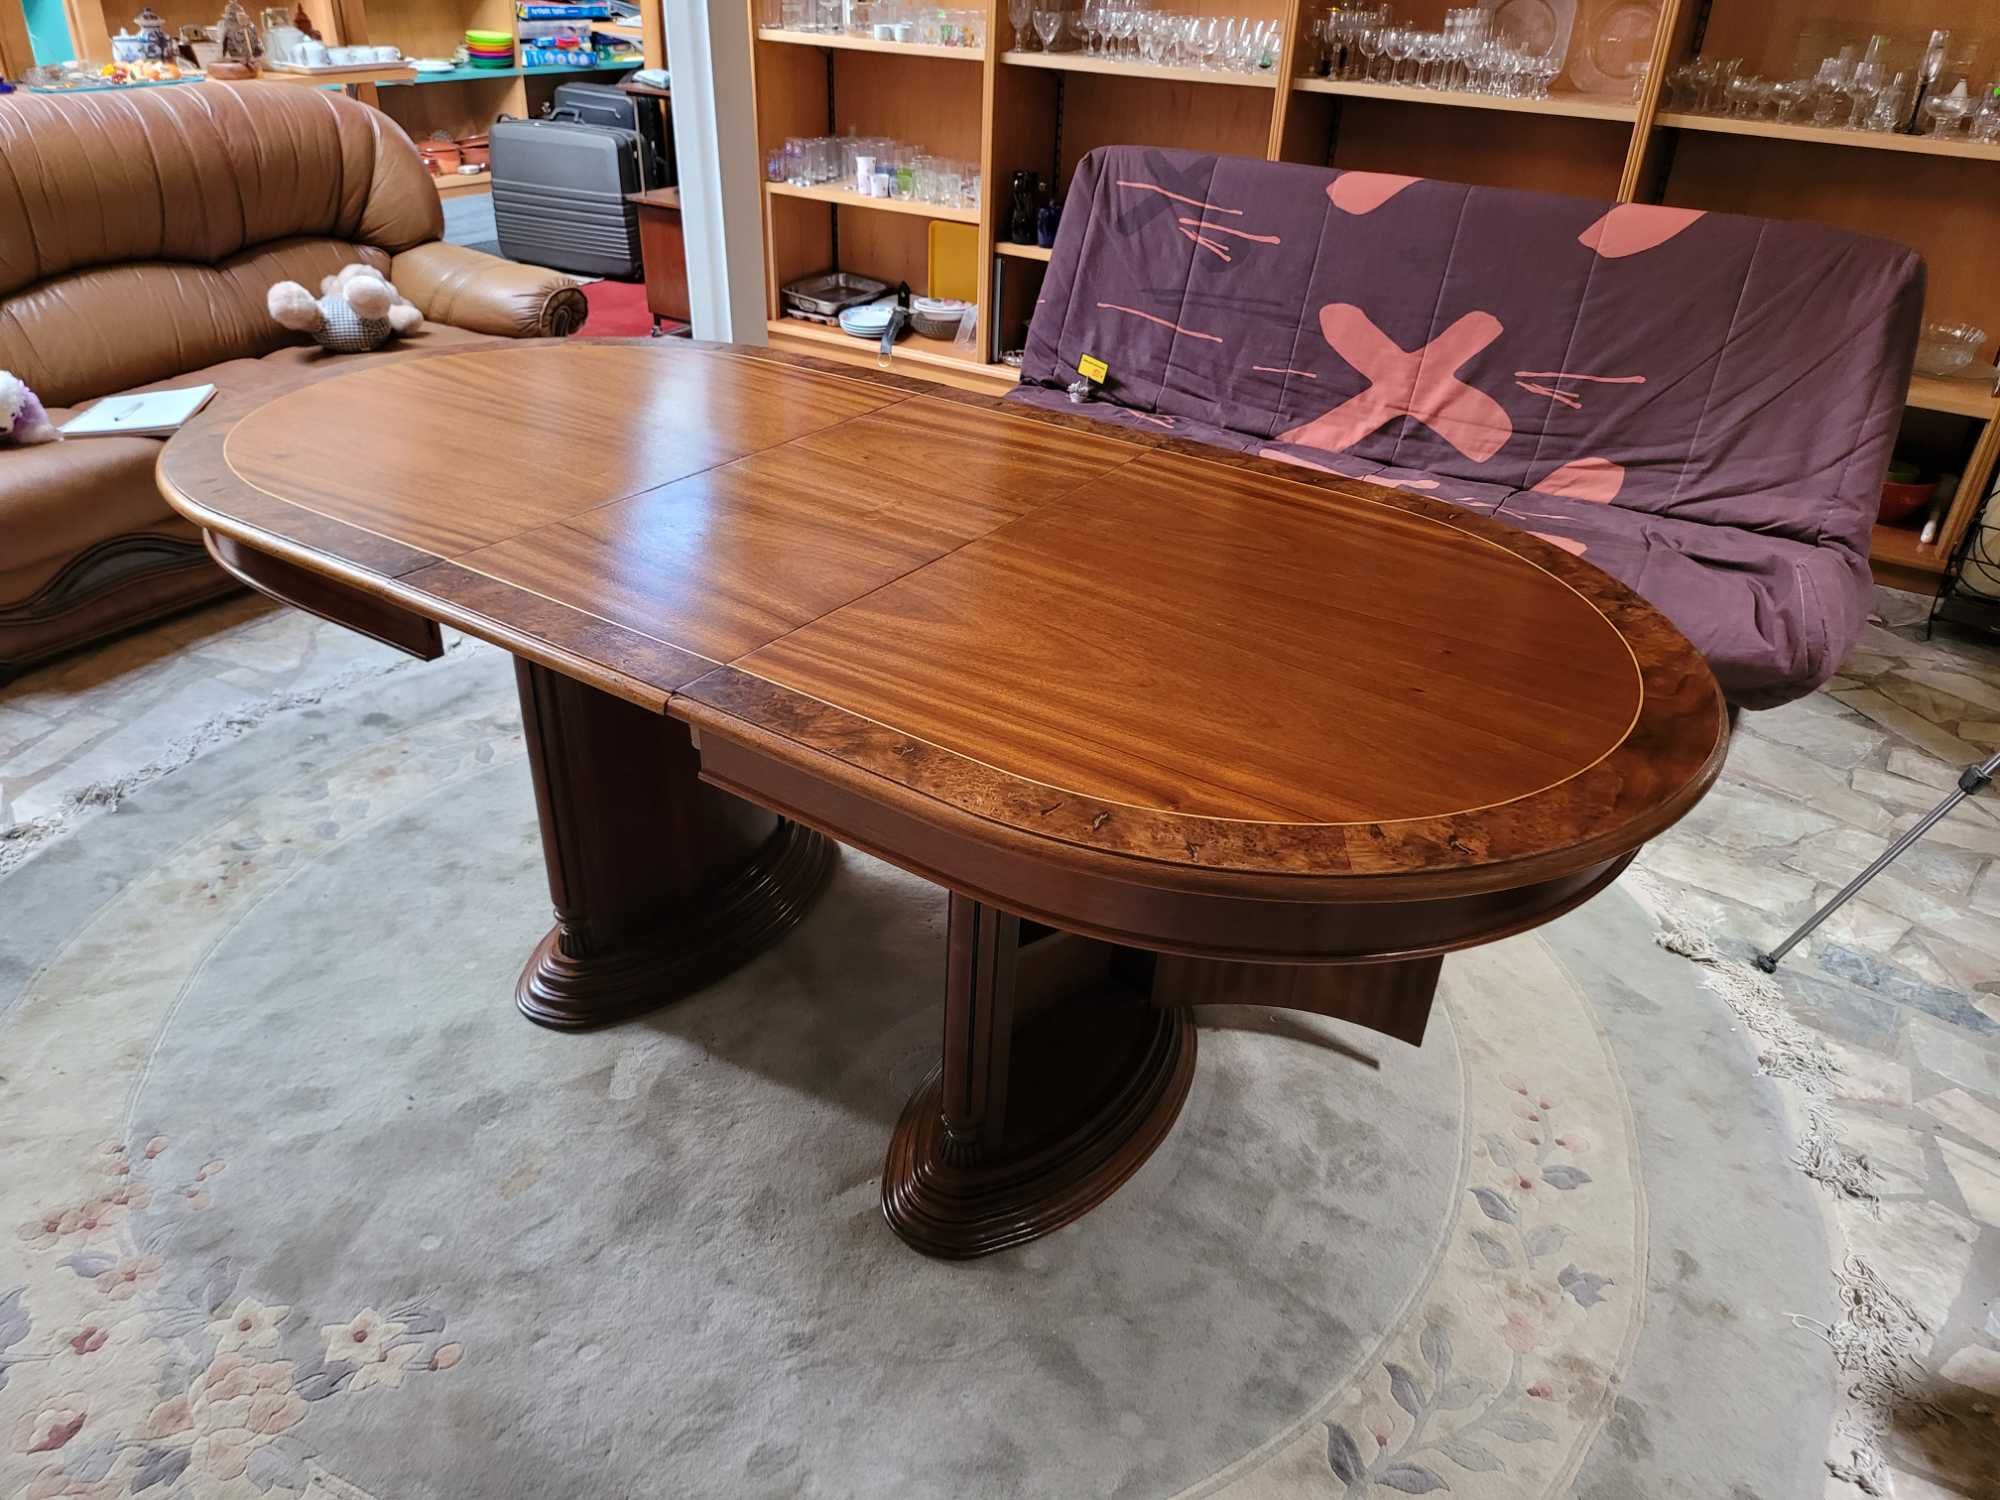 Belíssima mesa de sala em madeira maciça com arrumação em ambos os